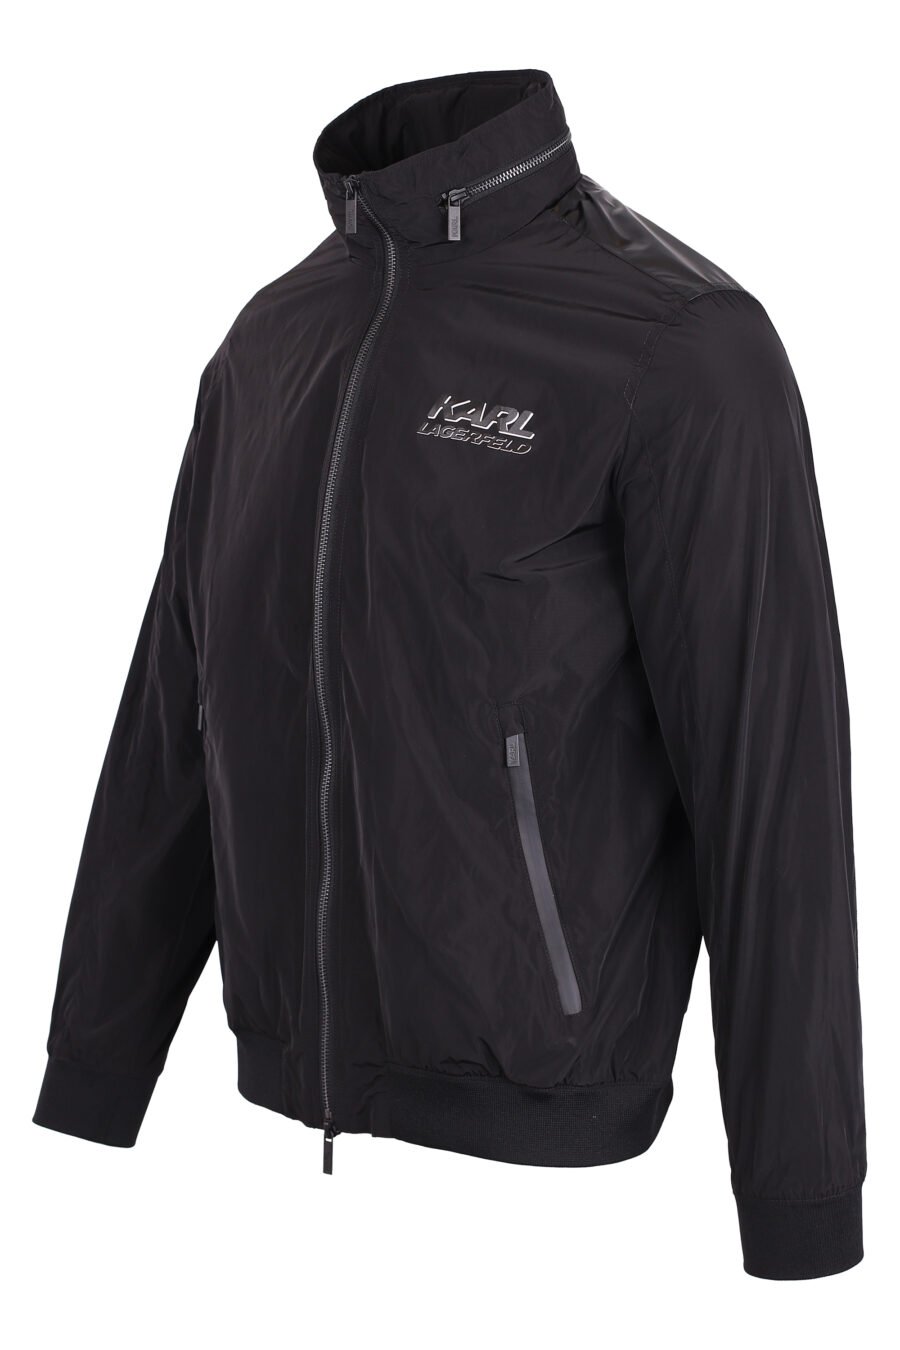 Schwarze Jacke mit Reißverschluss und schwarzem 3d weißem Logo - IMG 4319